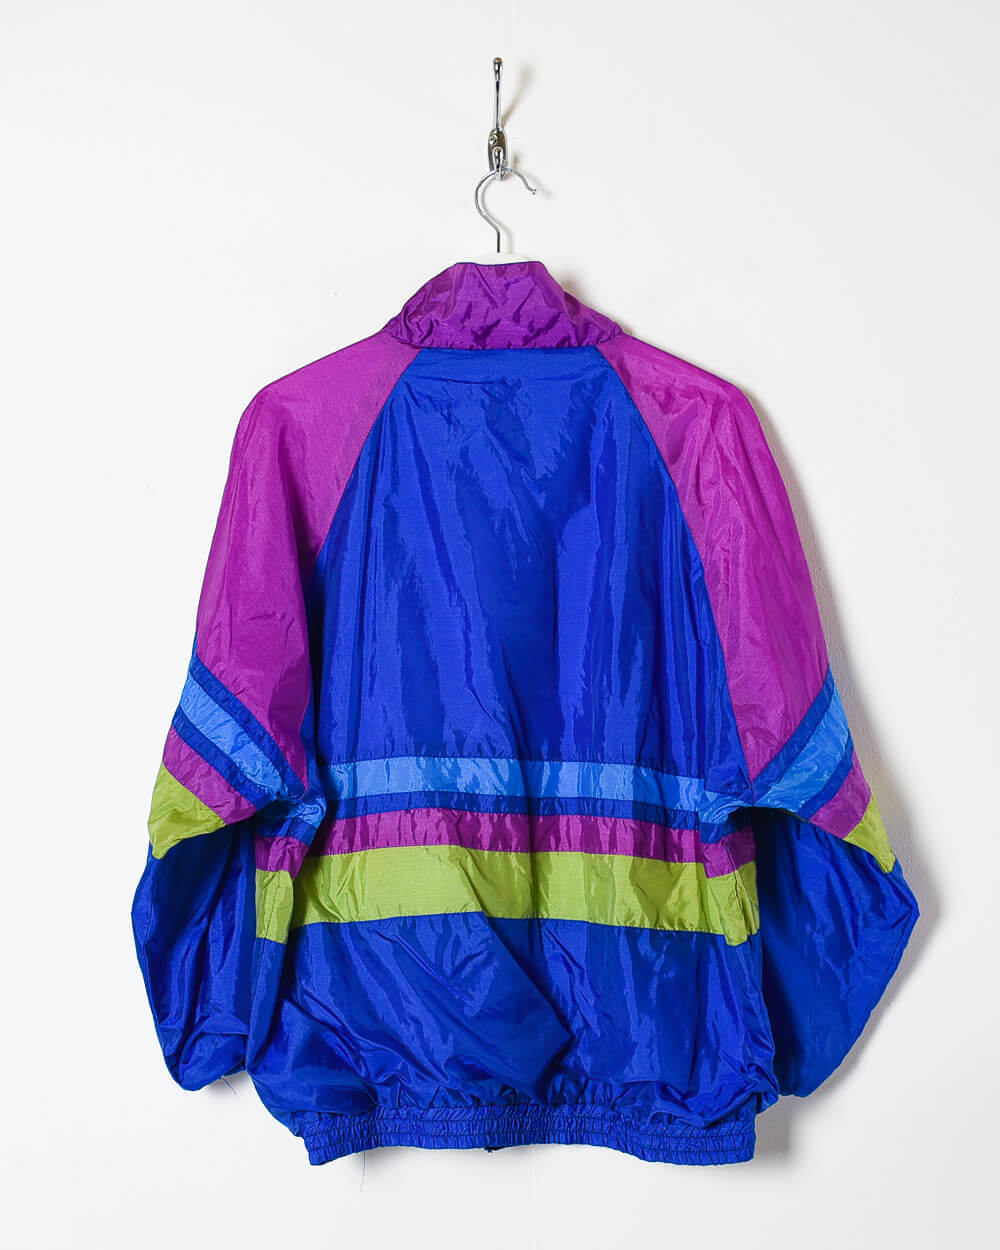 Purple Vintage Festival Shell Jacket - Medium